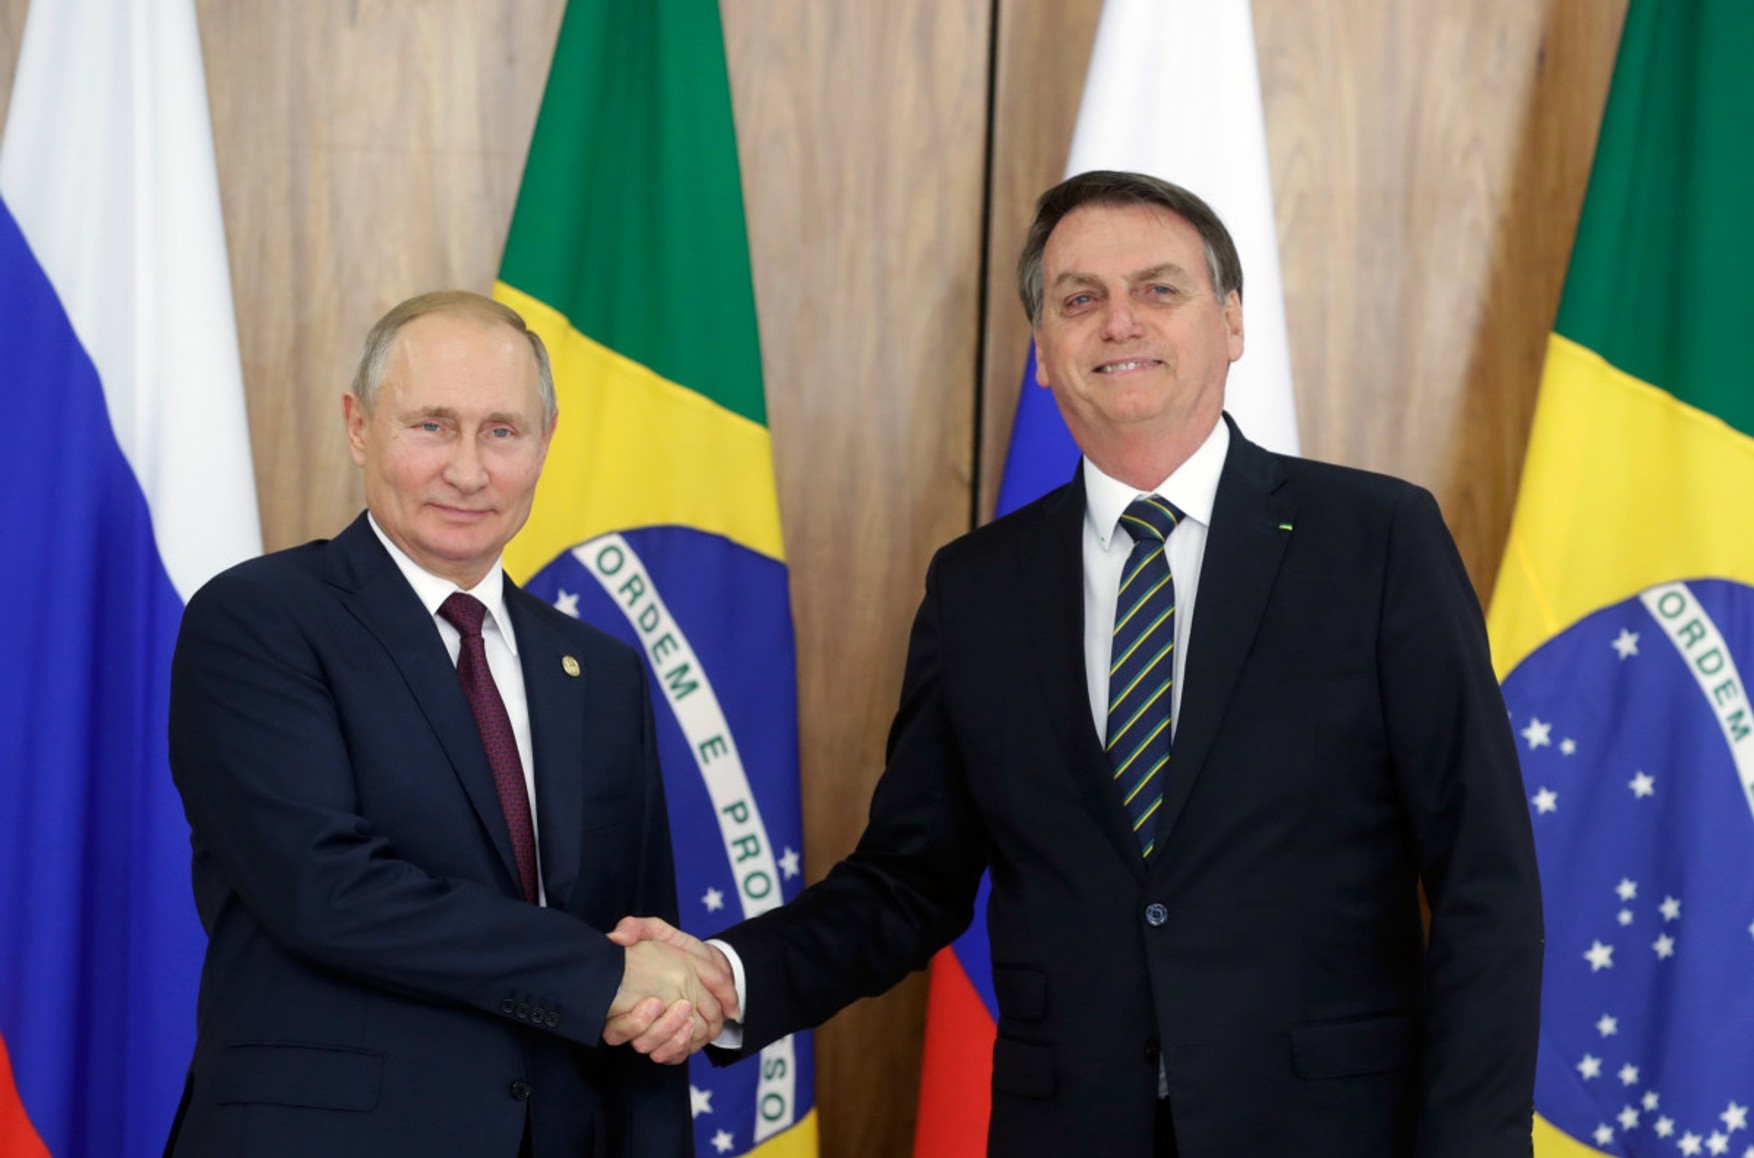 Болсонару: Бразилия не присоединится к санкциям против России и продолжит закупать у нее удобрения